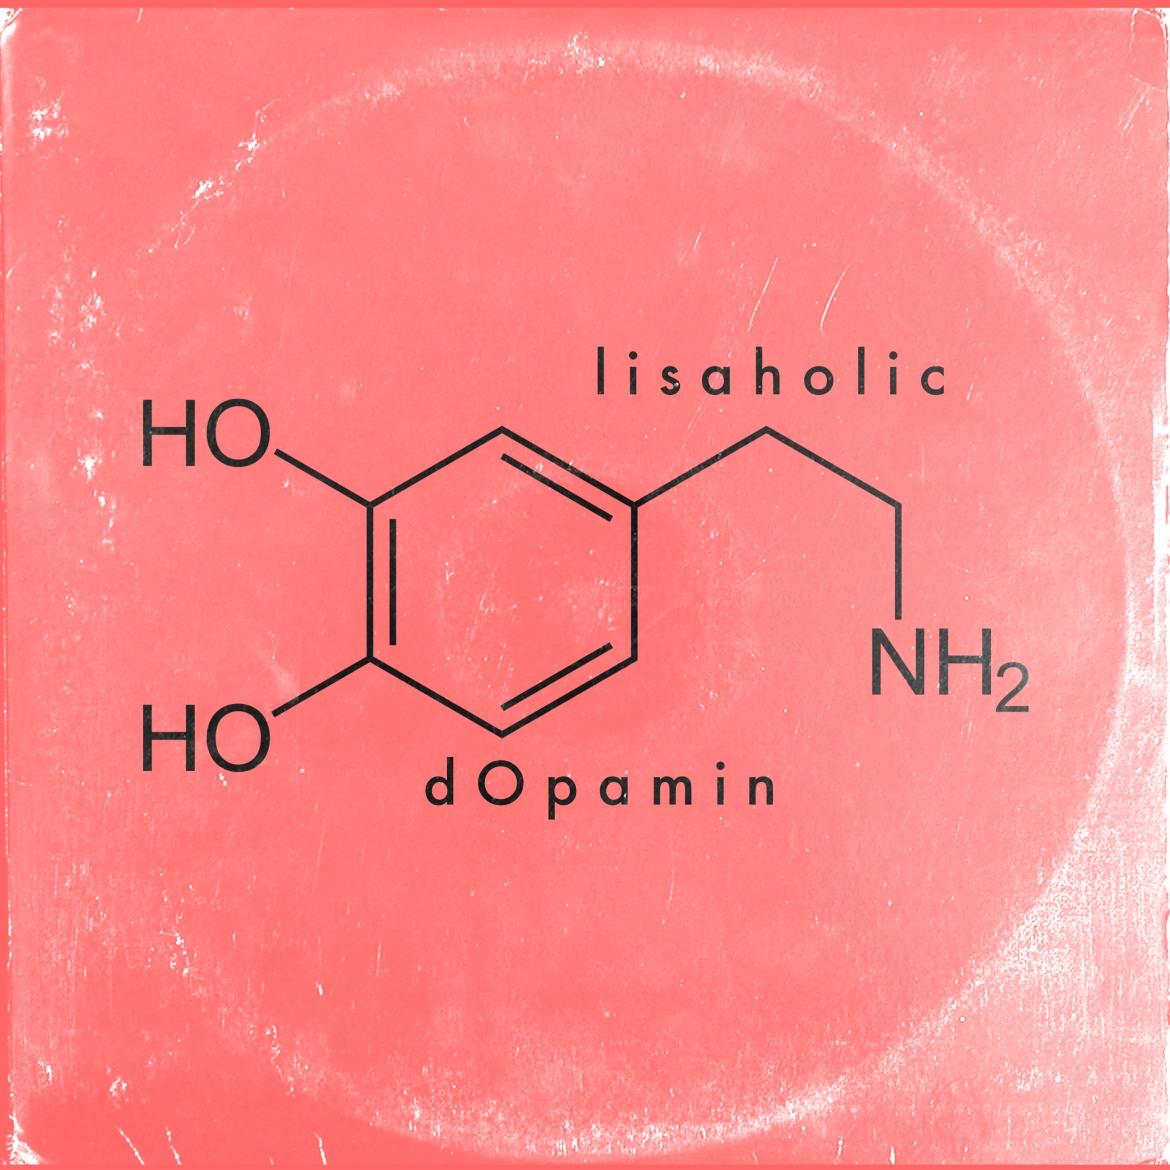 Singlecover Lisaholic "Dopamin"